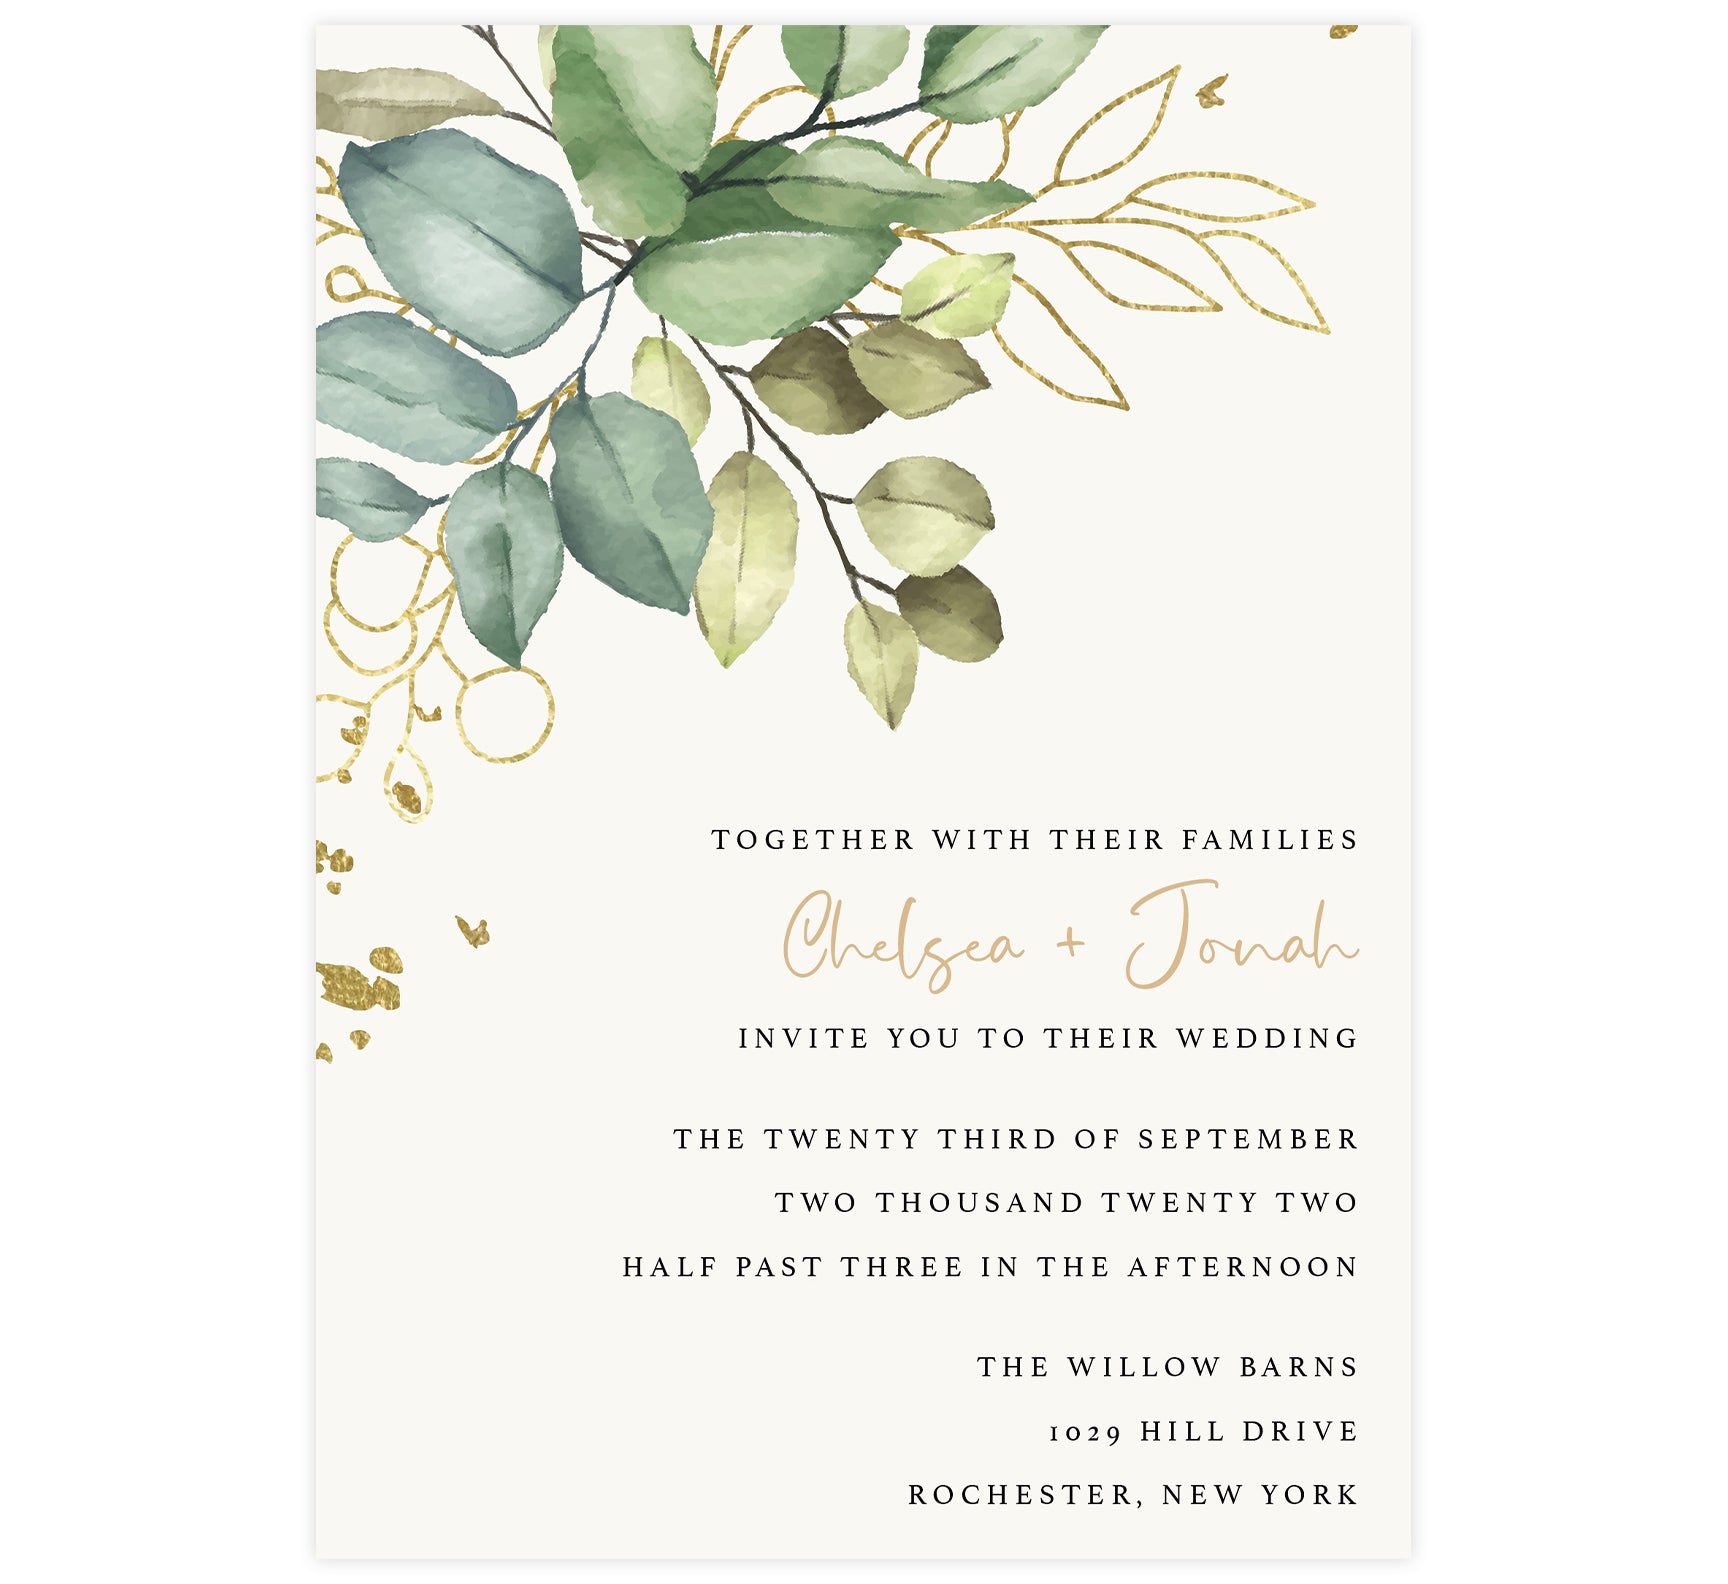 Thiệp cưới màu xanh lá cây vàng họa tiết lá là sự lựa chọn hoàn hảo cho những cặp đôi yêu thích sự giản dị và tươi mới. Hãy cùng xem những lá cây này mang đến một cảm giác tươi mới và thanh tao cho thiệp của bạn.